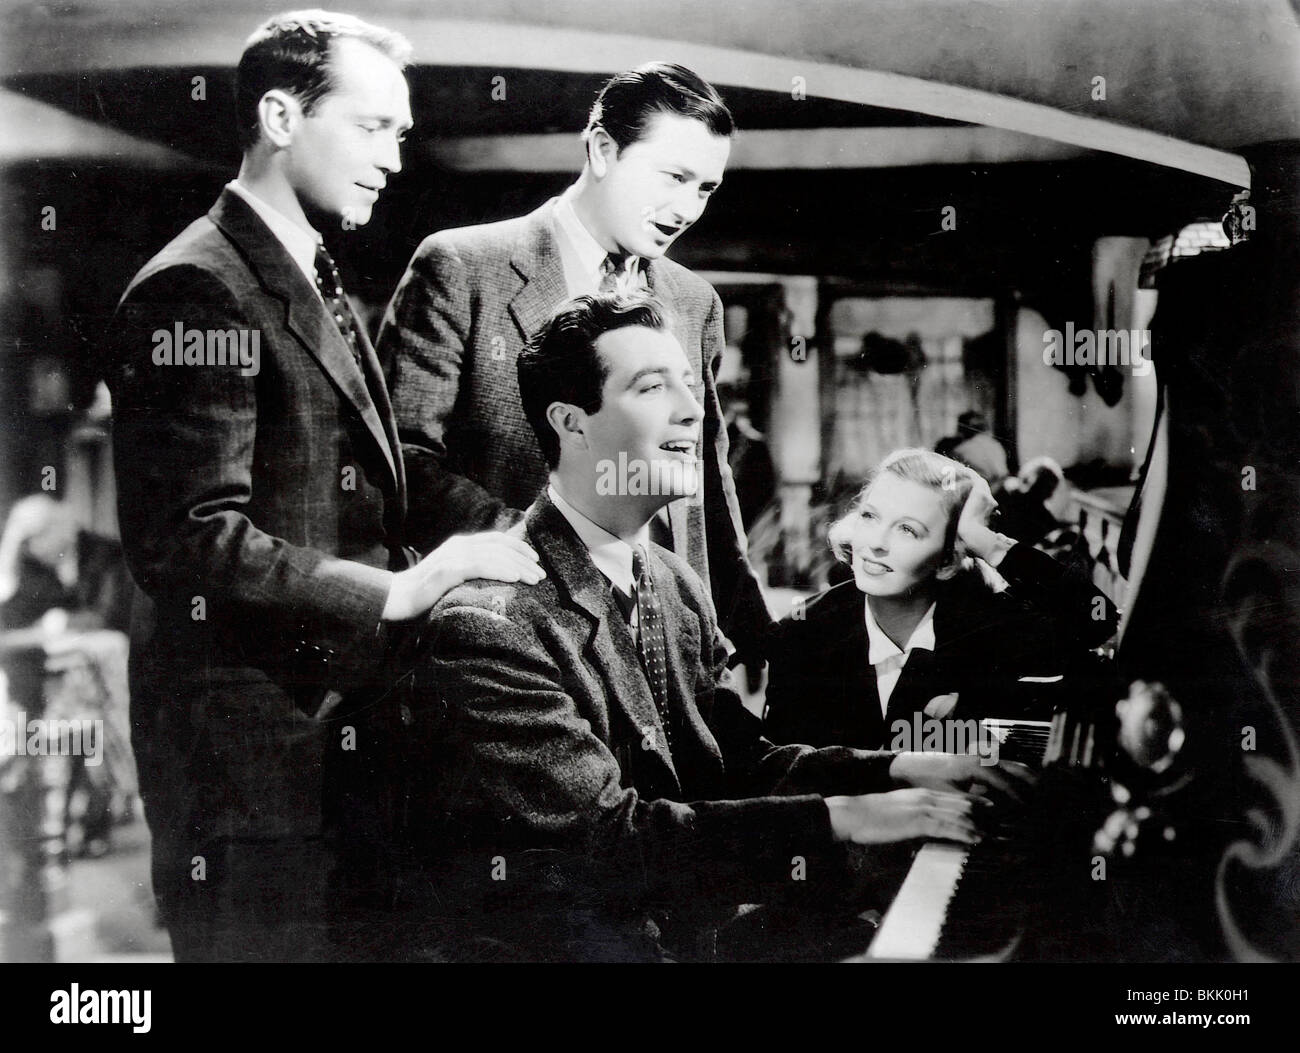 Trois camarades (1938) Franchot Tone, ROBERT TAYLOR, ROBERT YOUNG, MARGARET SULLAVAN, FRANK BORZAGE (DIR) TREC 006 P Banque D'Images